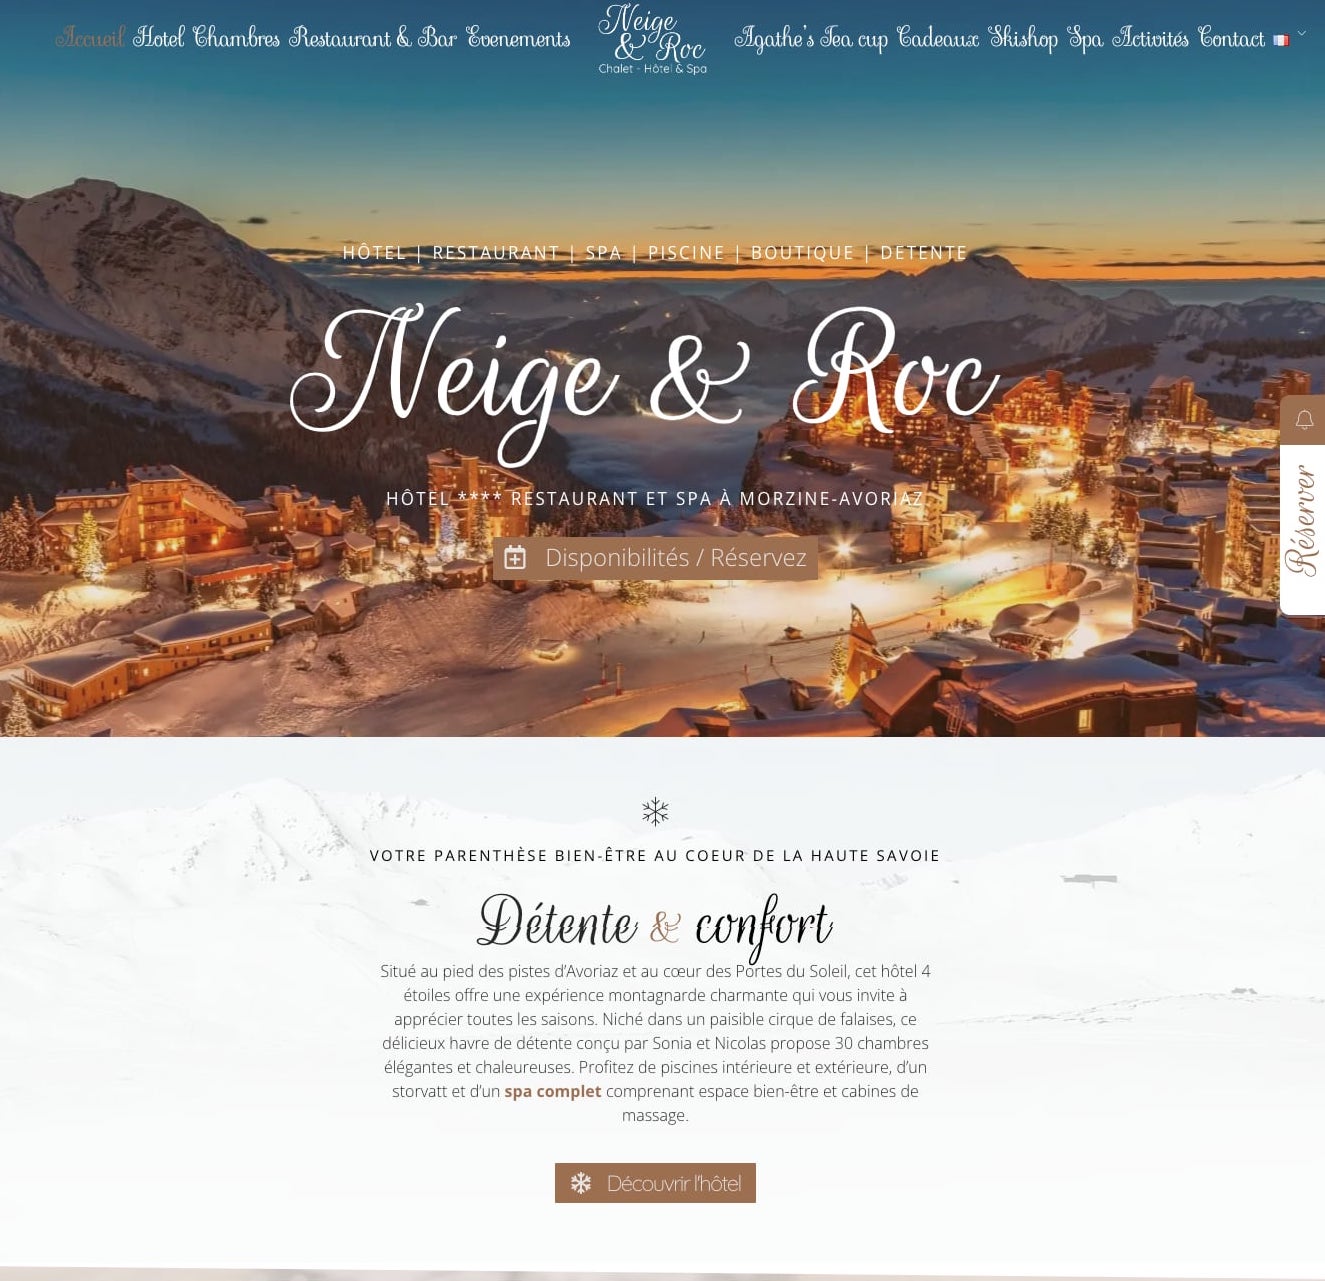 Website design for a resort hotel